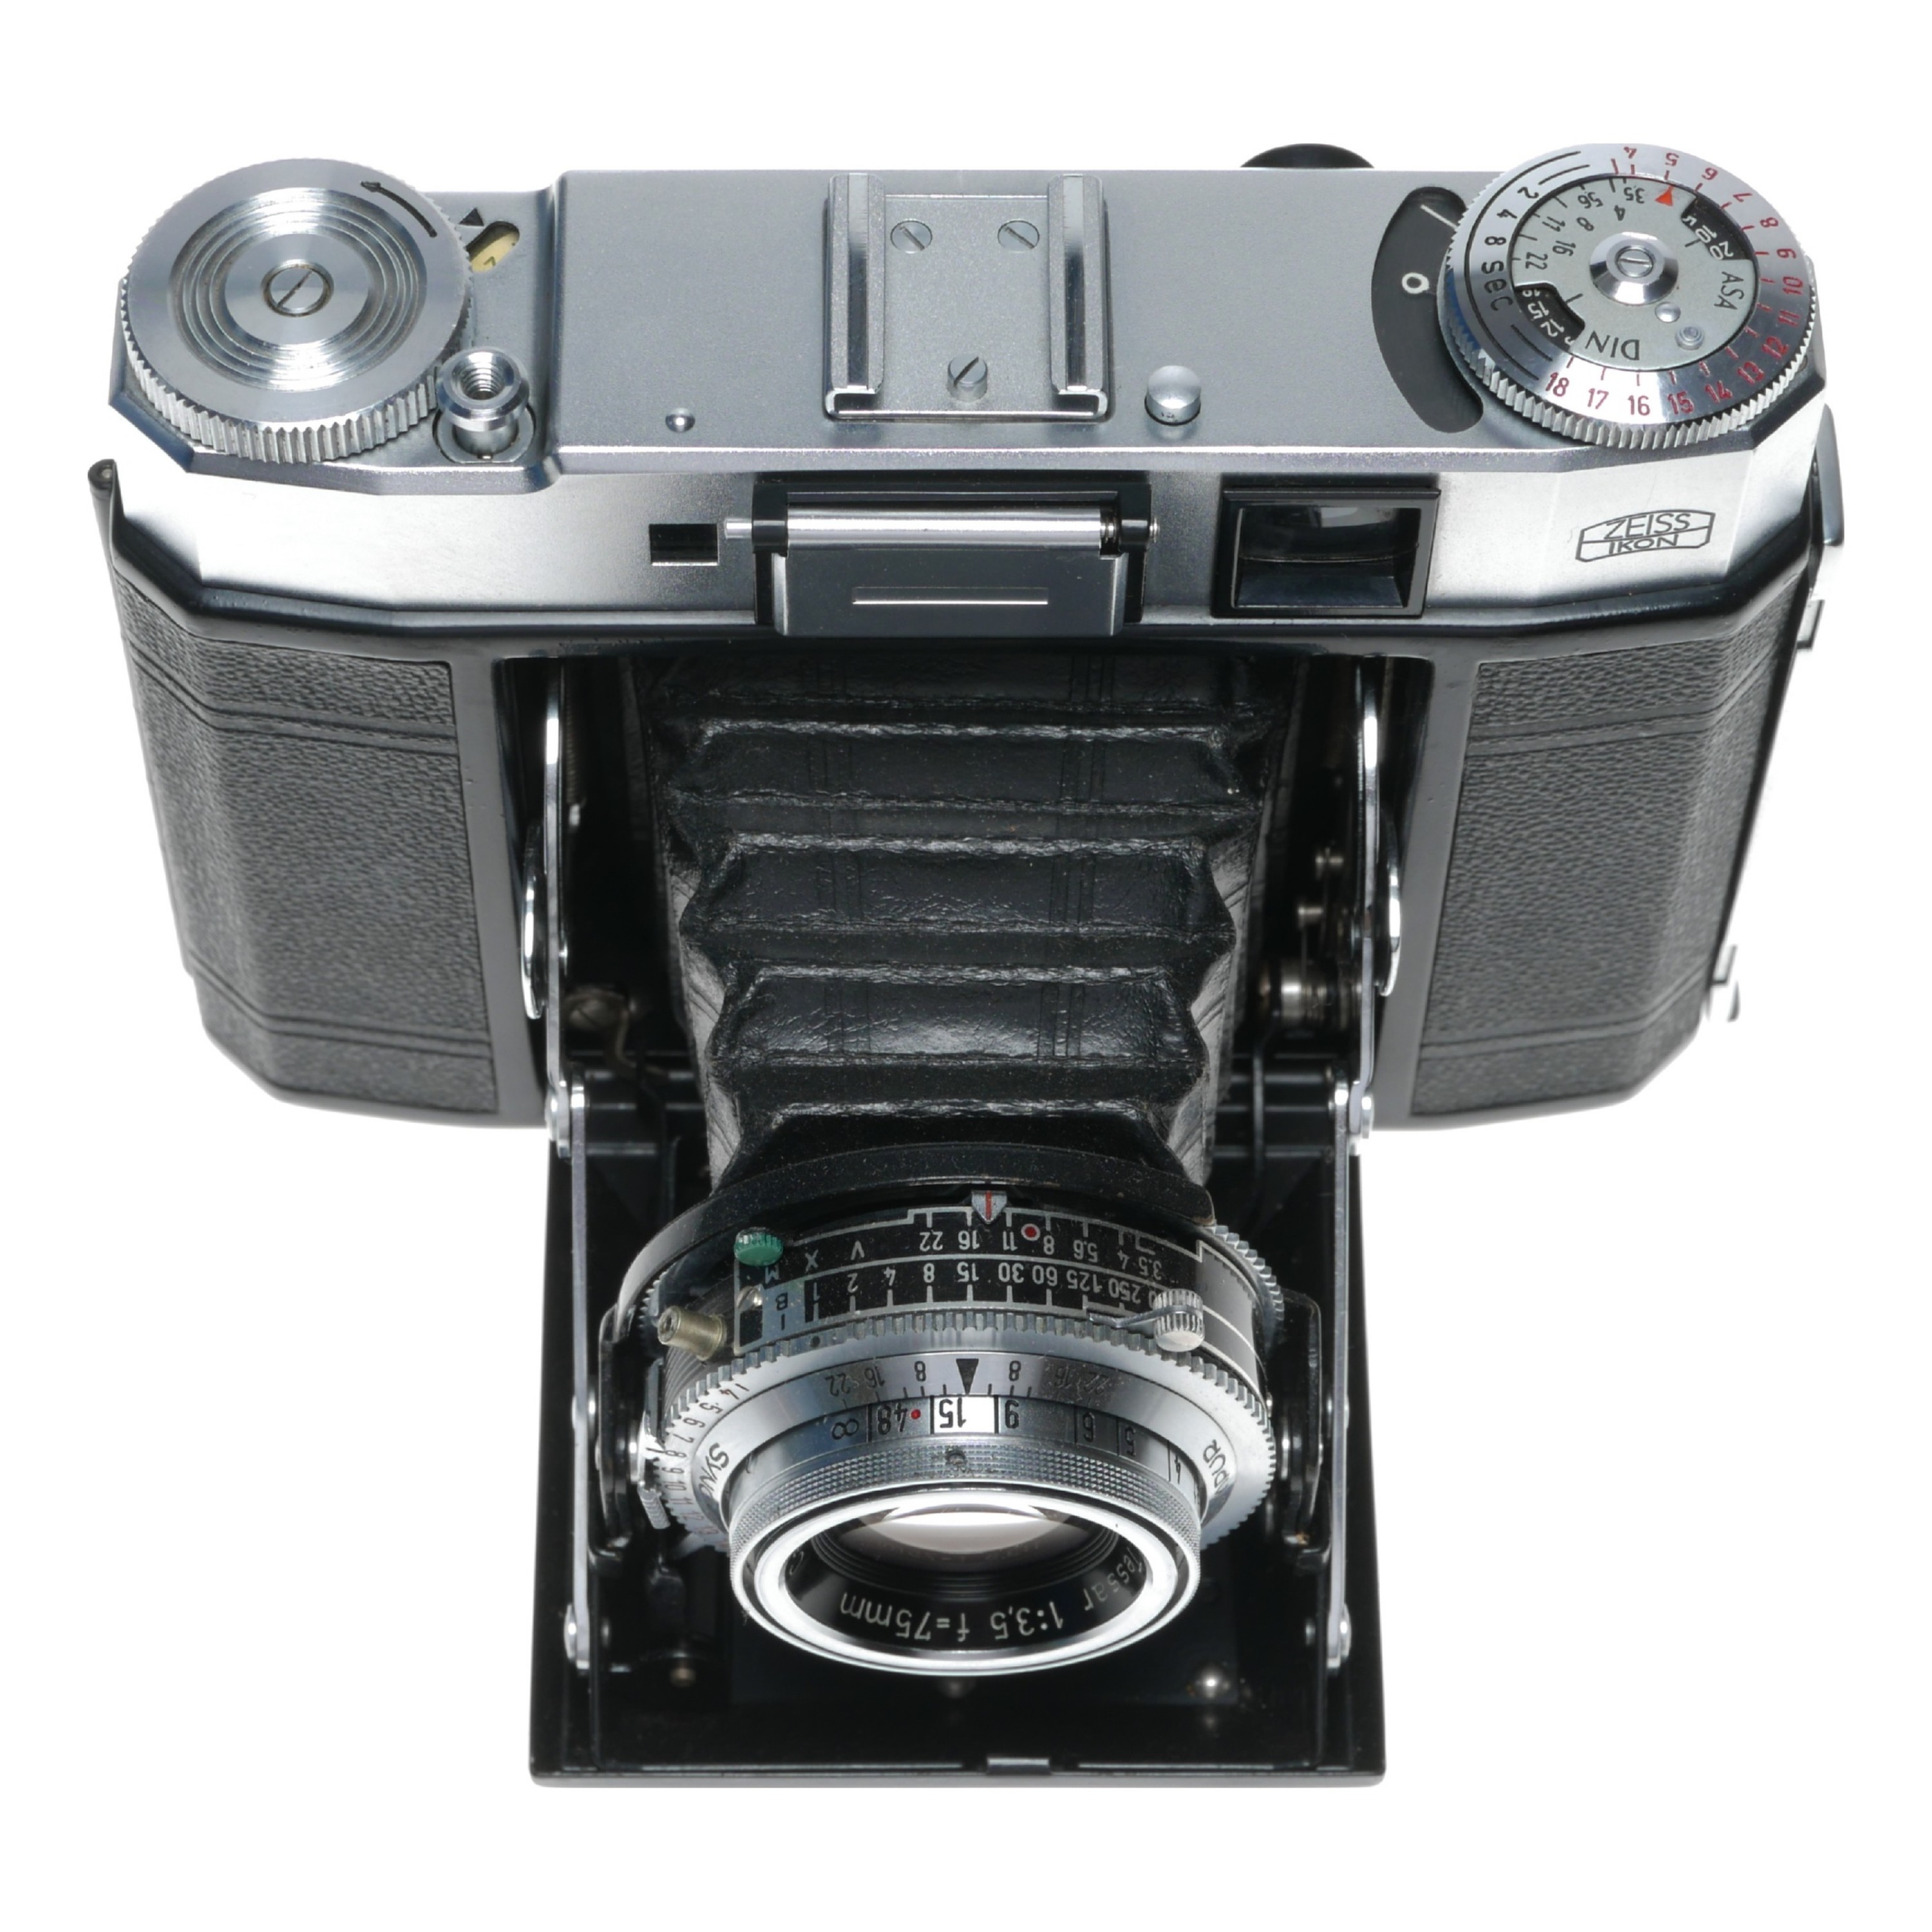 Zeiss Ikon Super Ikonta 534/16 Model IV Folding Camera Tessar 1:3.5 fu003d75mm